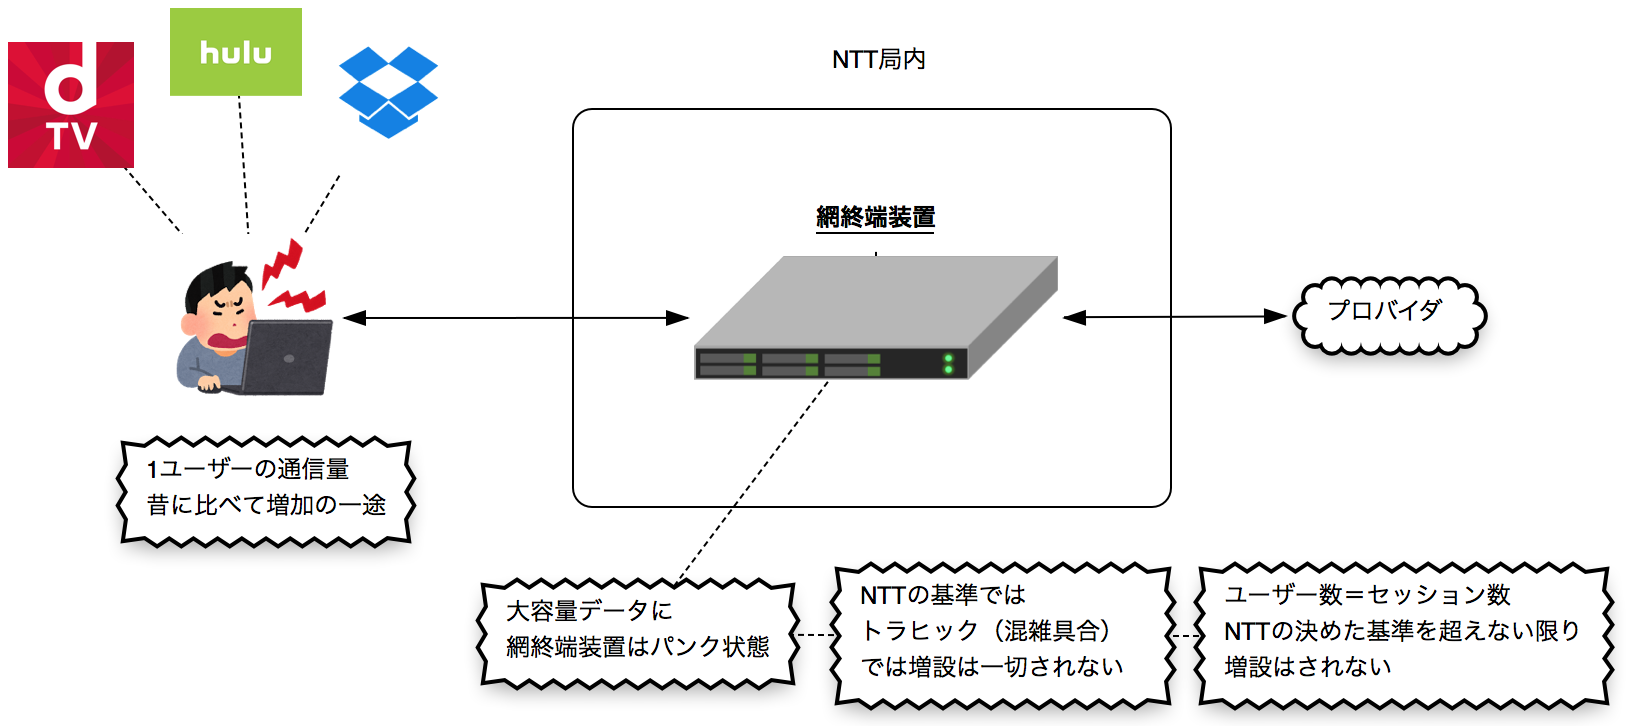 網終端装置の増設はNTT基準のセッション数